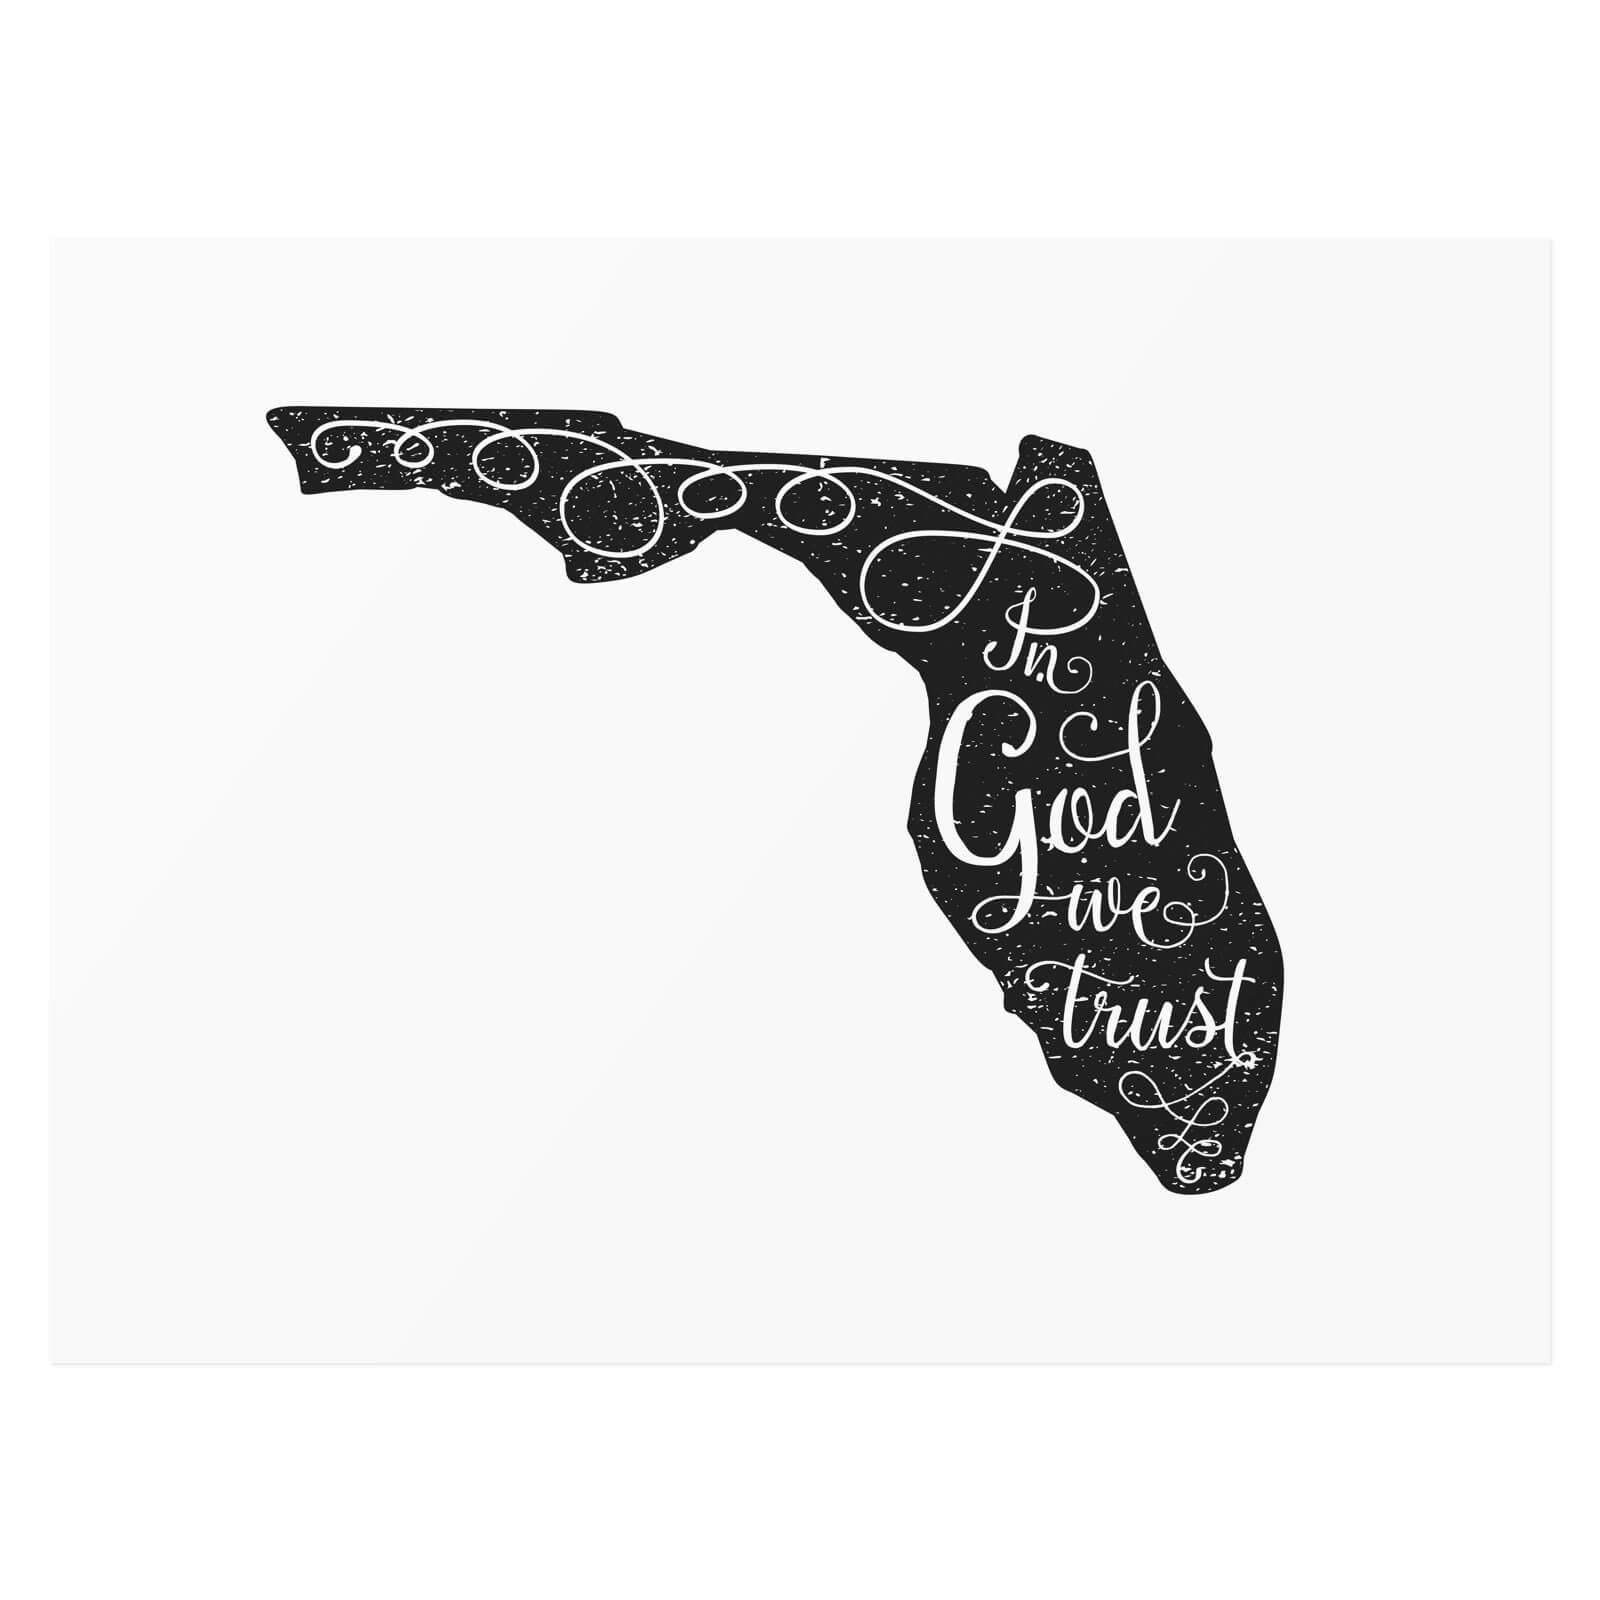 Florida — In God we trust